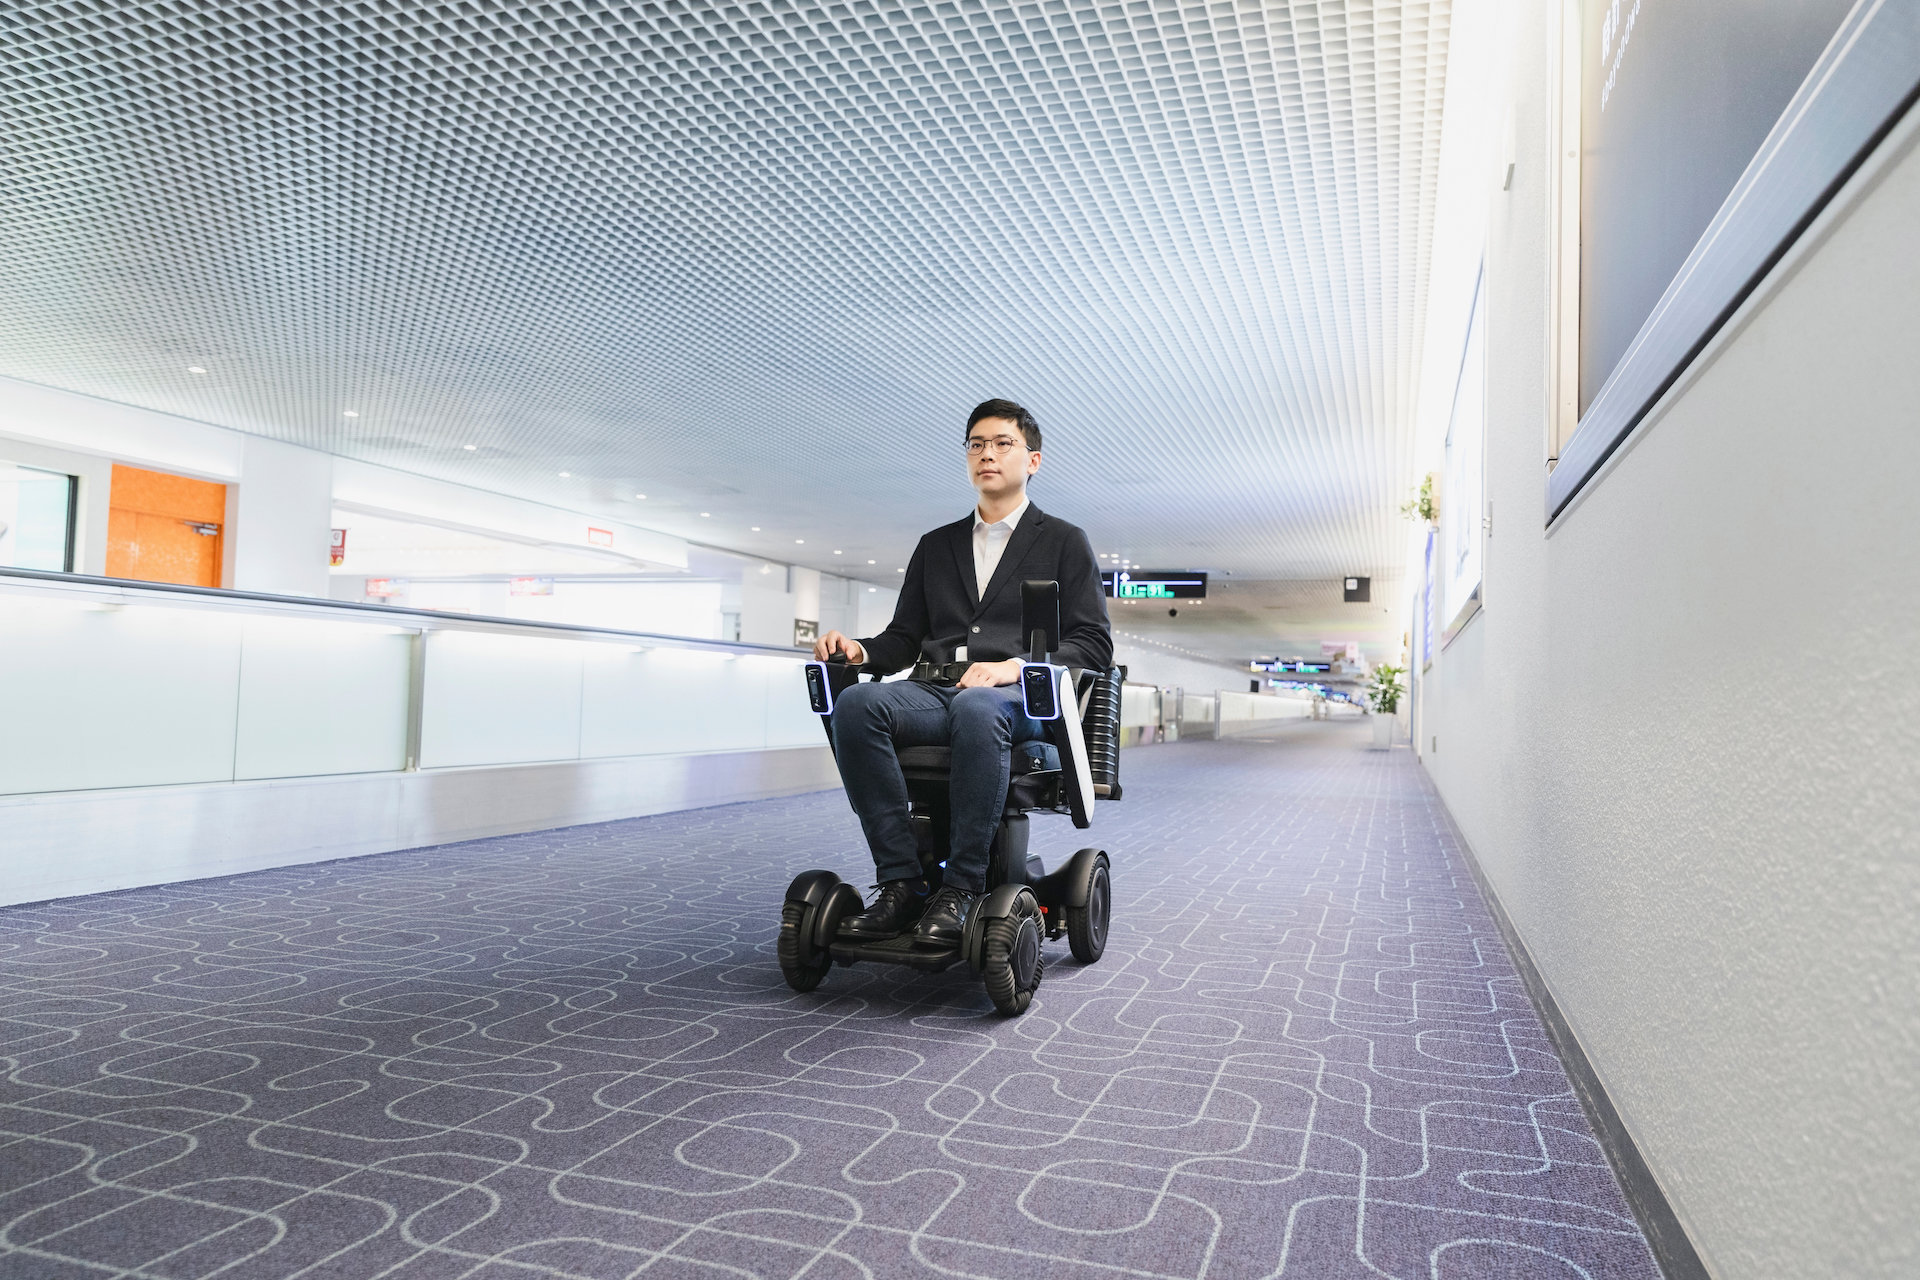 車いす型自動運転モビリティが羽田空港に正式導入、COVID-19対策にも貢献